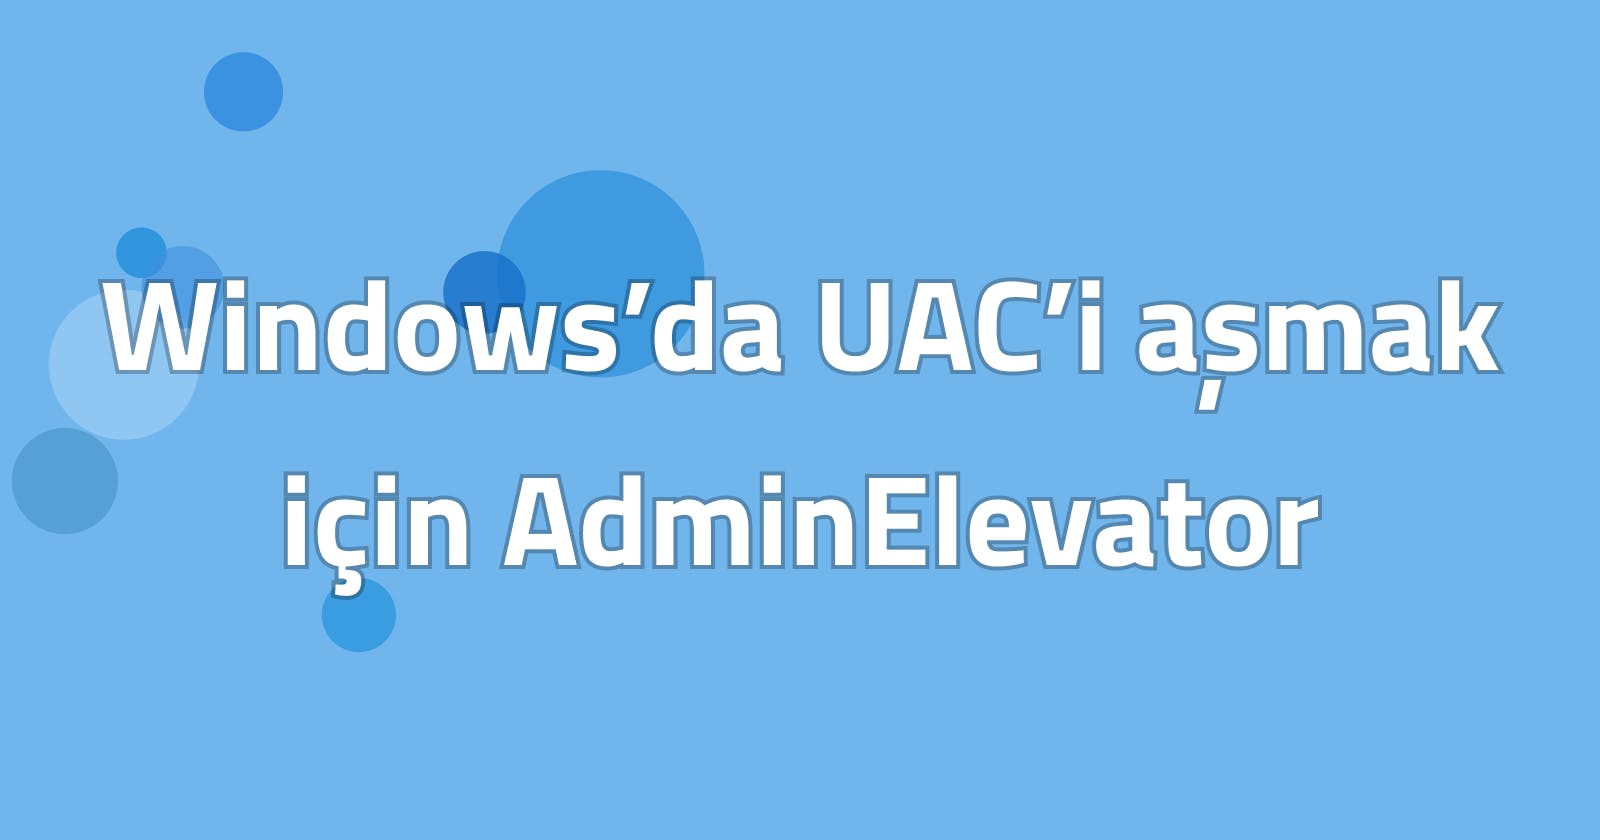 Windows’da UAC’i aşmak için AdminElevator